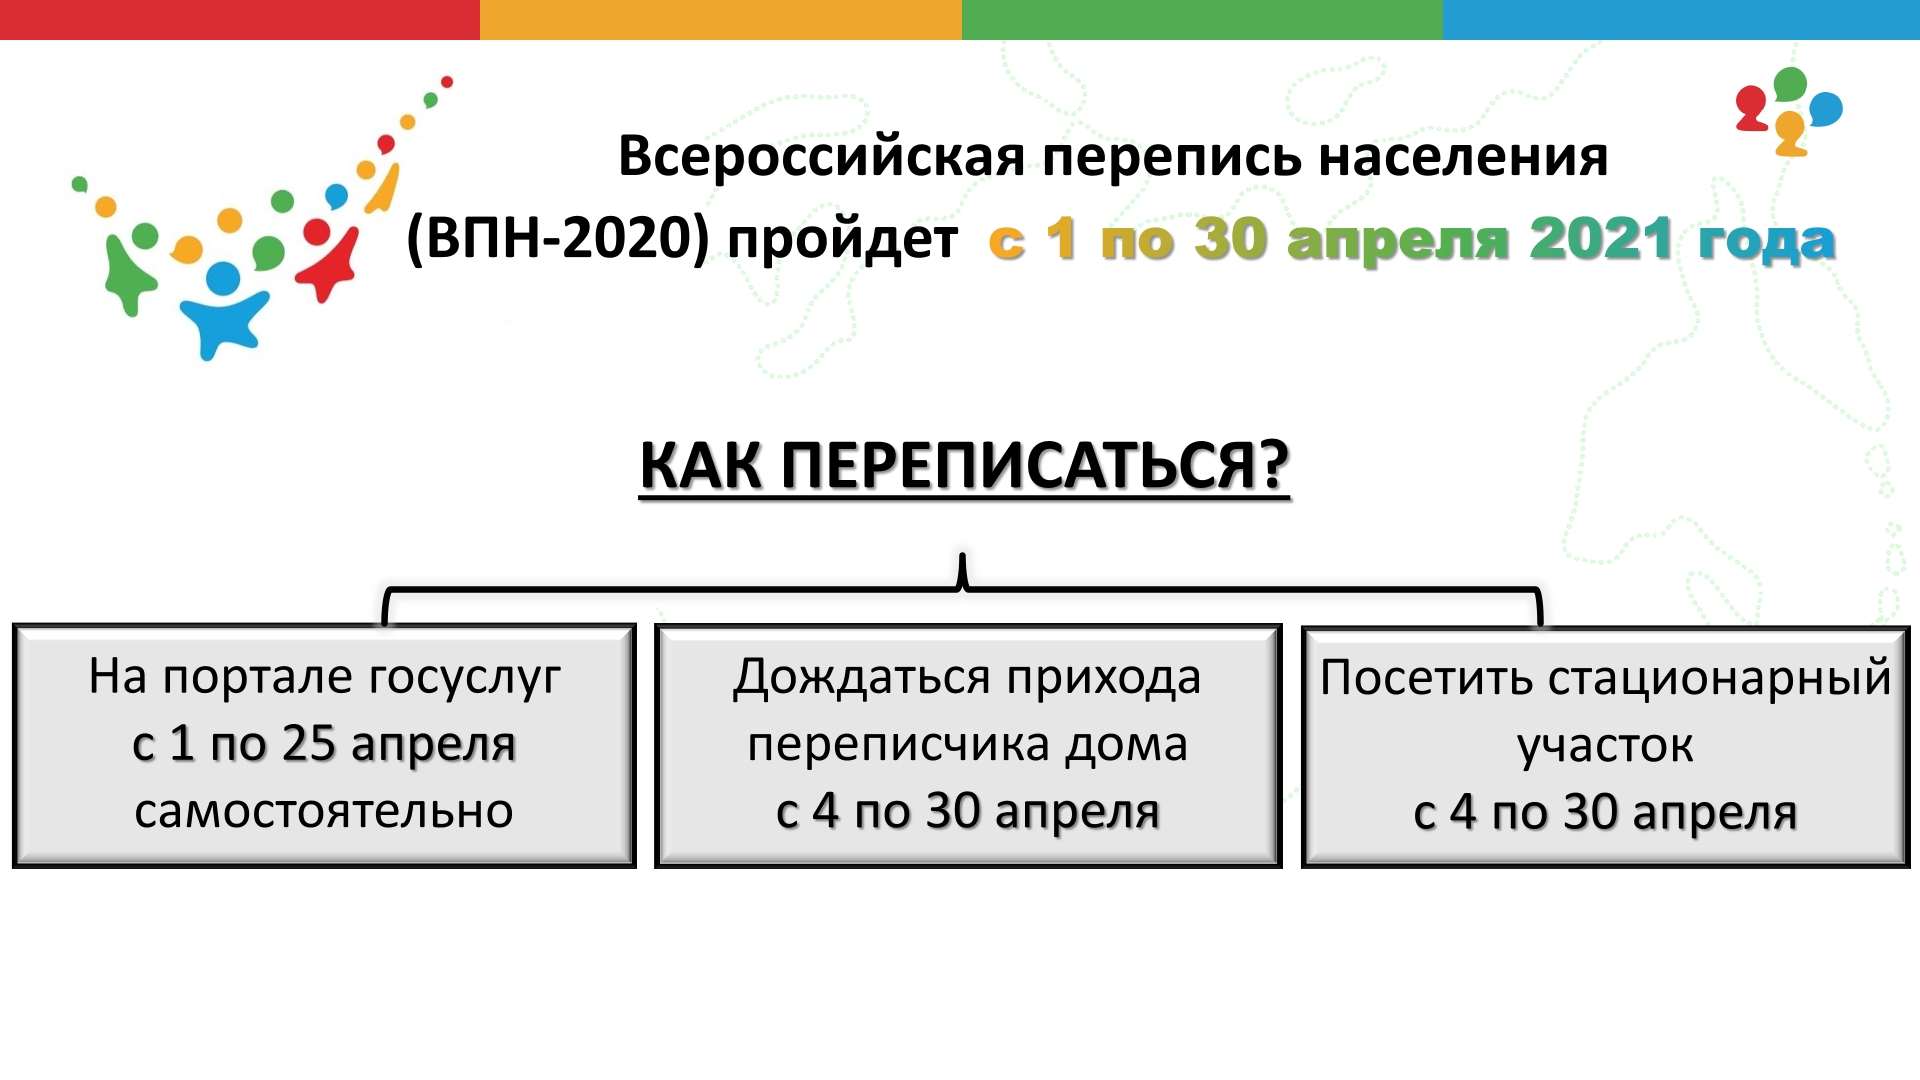 Русские в латвии в 2021 году: отношение, школы, работа